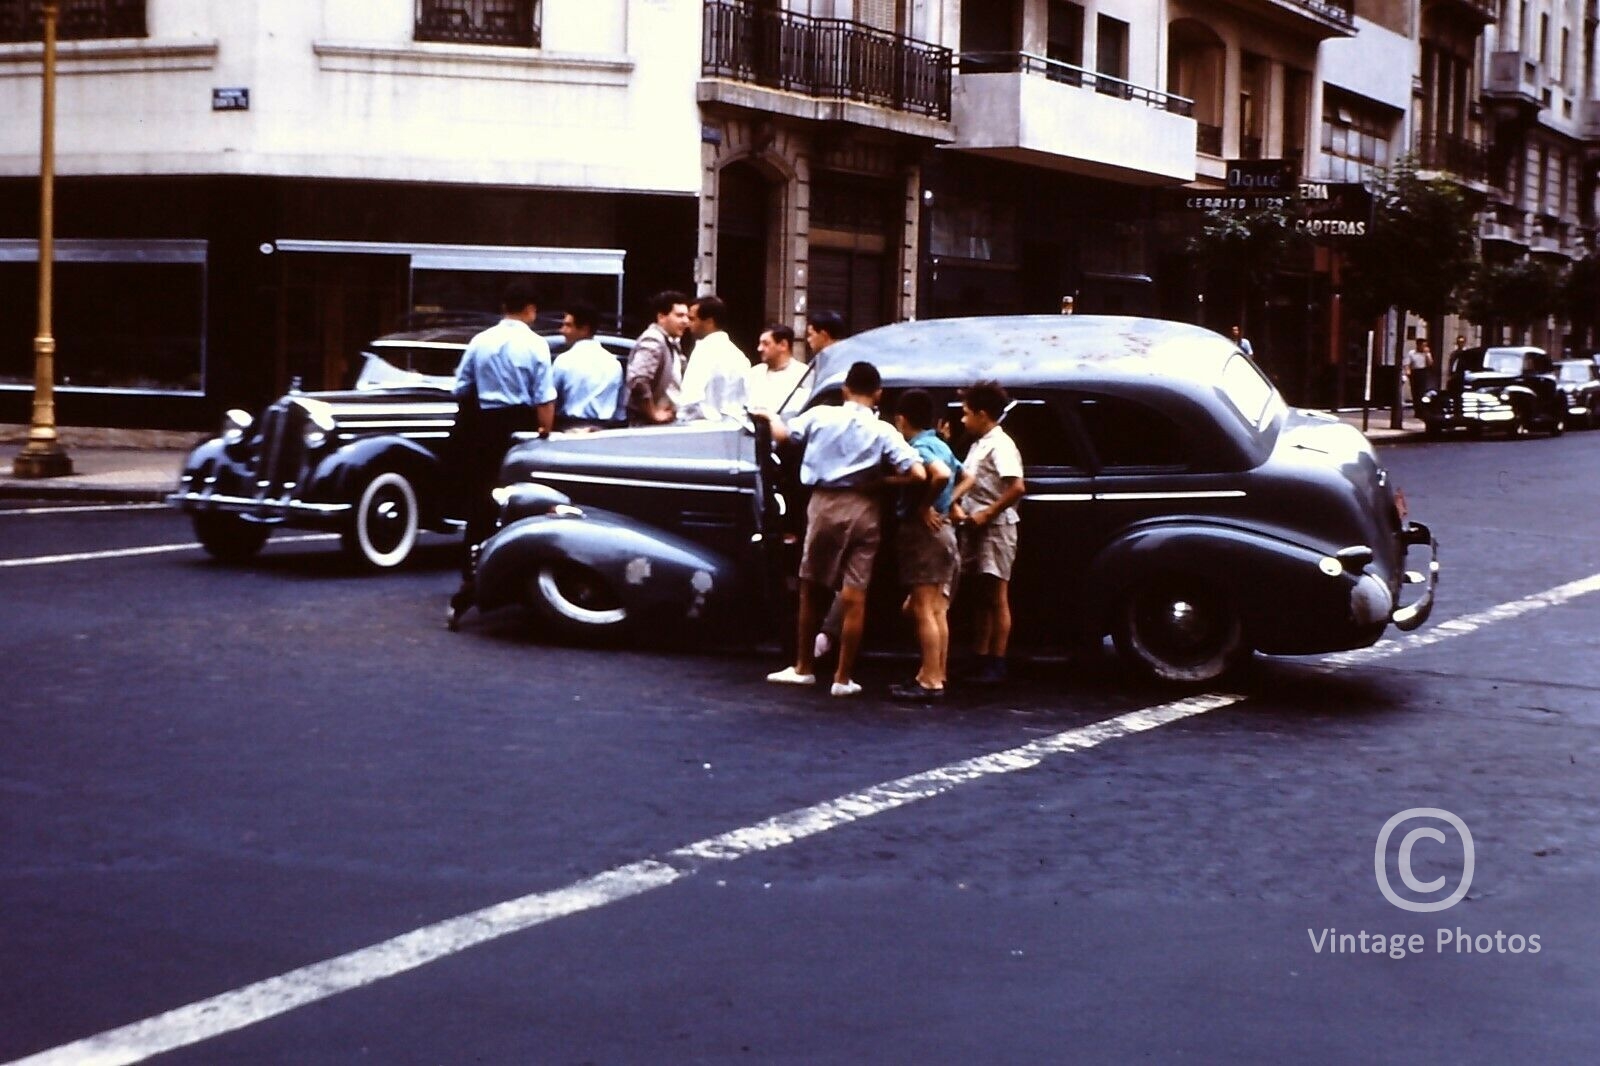 1950s Classic Car Accident, Belgium